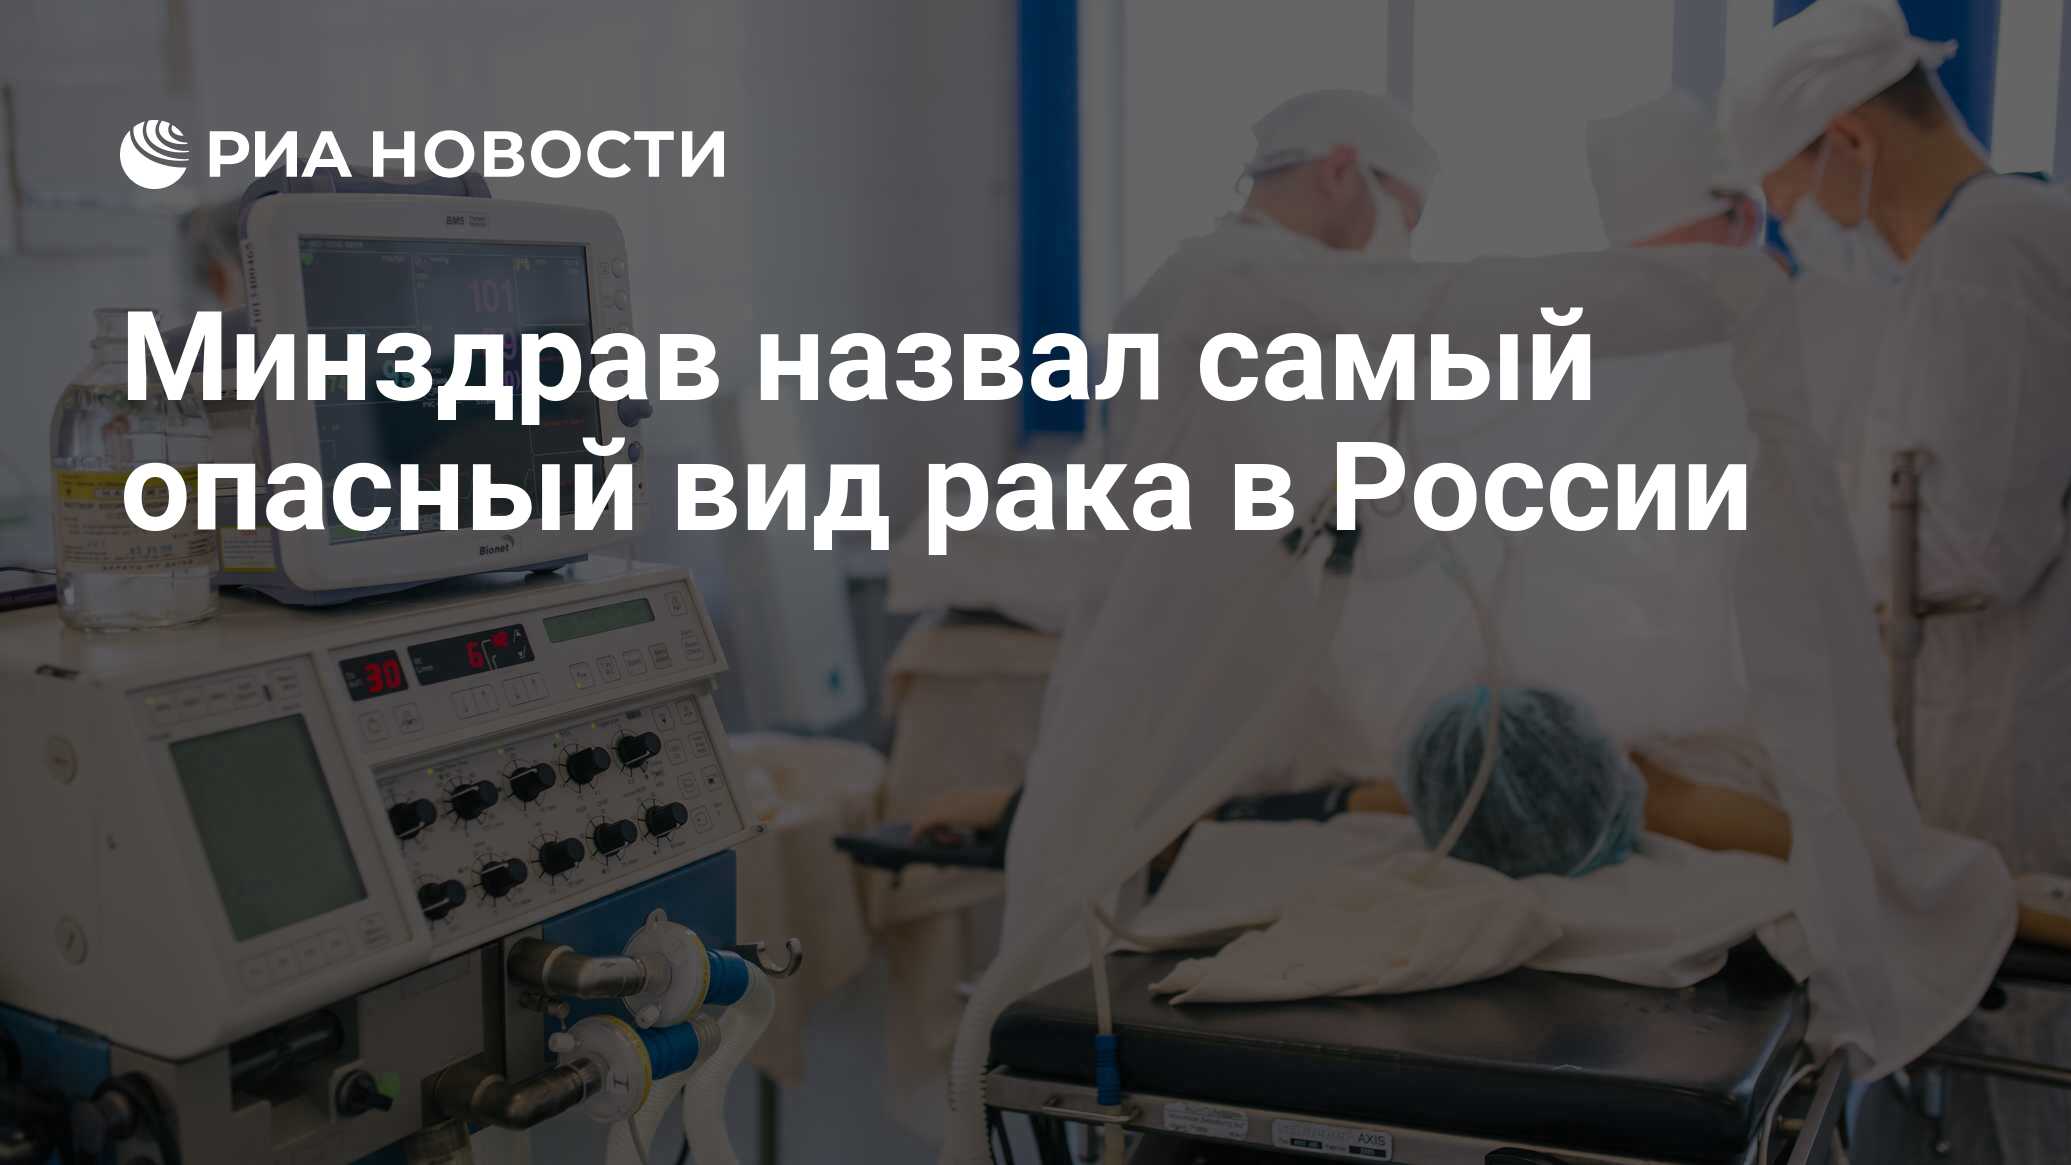 Минздрав назвал самый опасный вид рака в России - РИА Новости, 03.03.2020